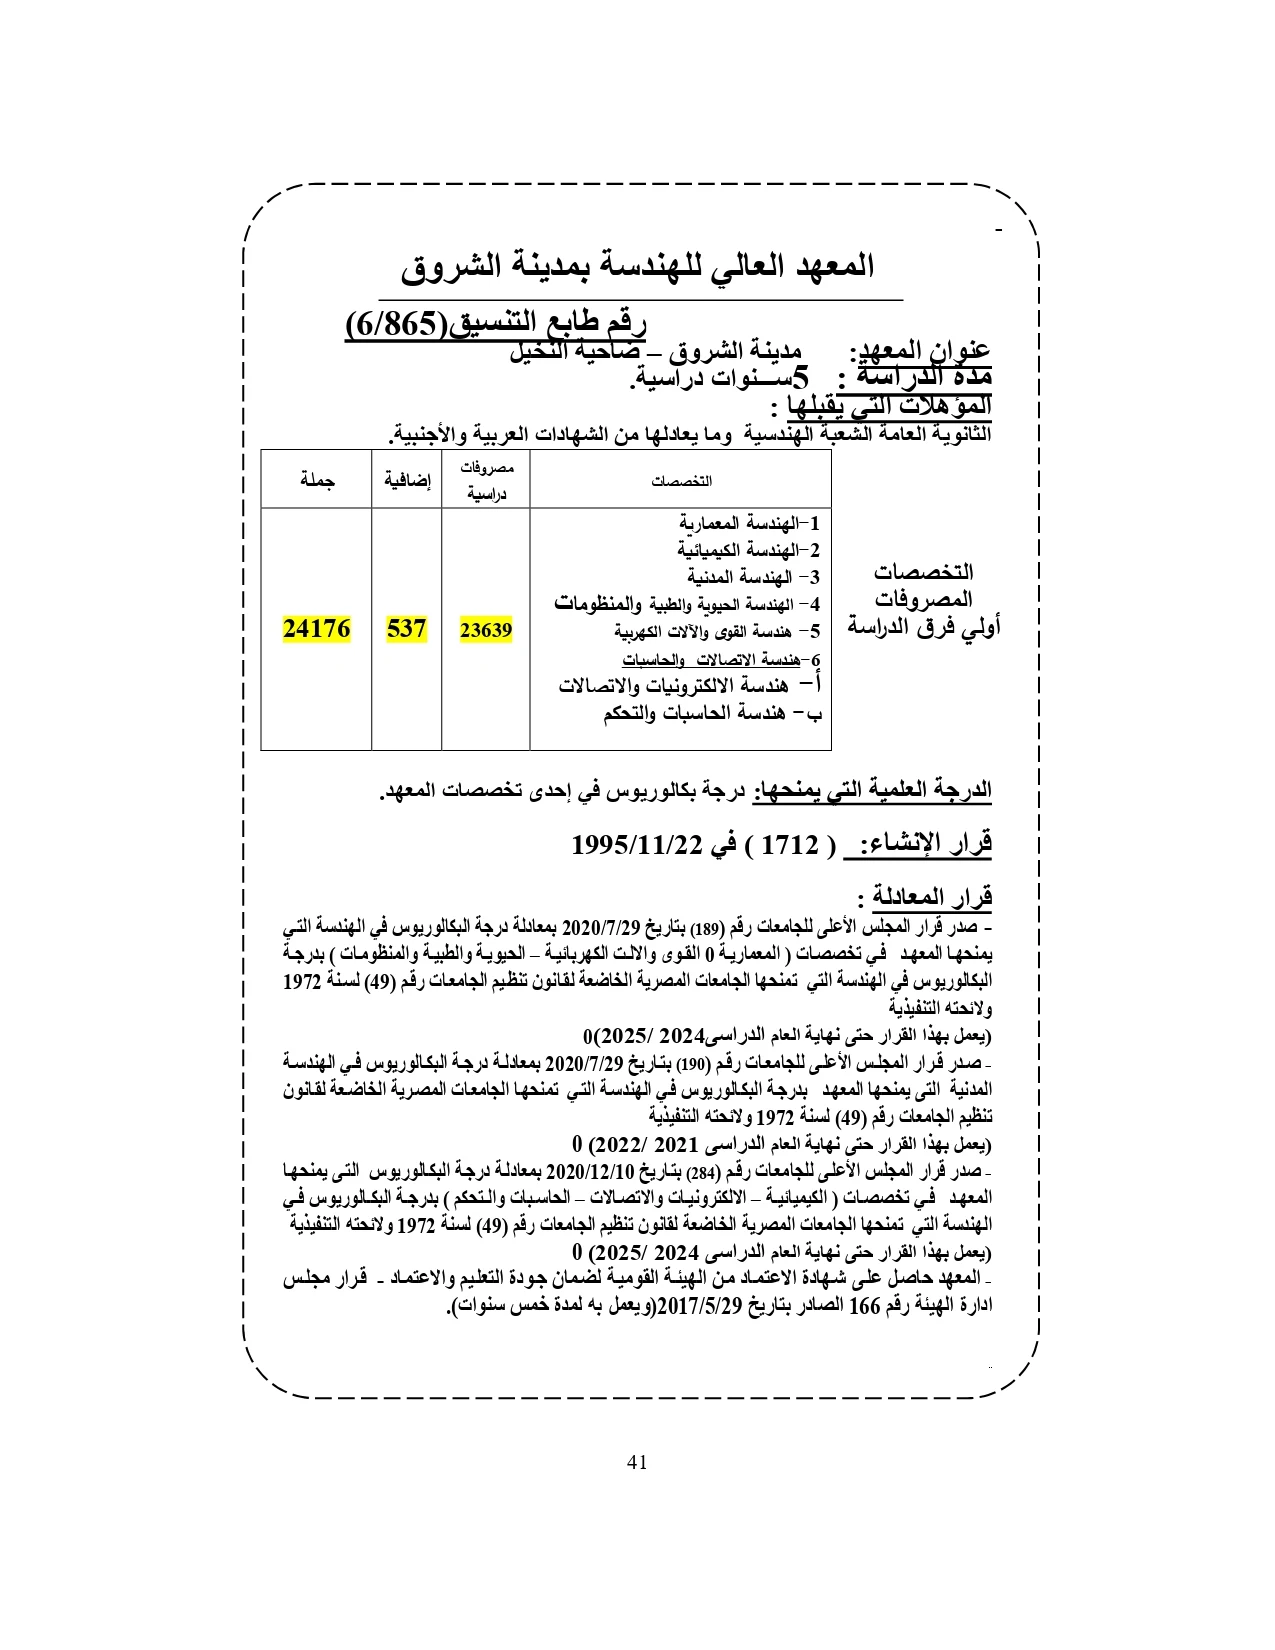 المعهد العالي للهندسة بمدينة الشروق «مصروفات ومعلومات»